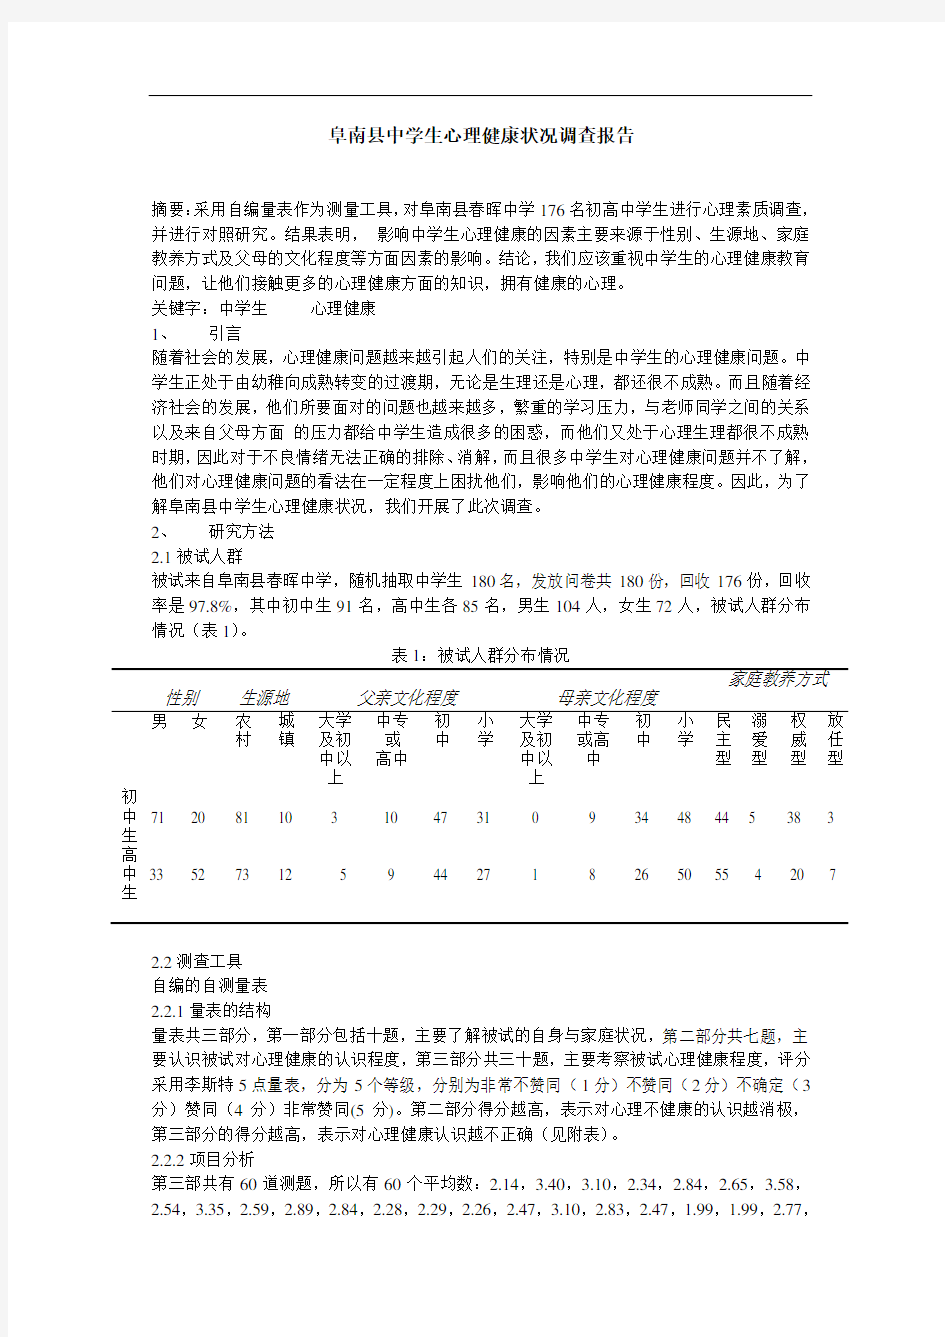 阜南县中学生心理健康状况调查报告  毕业论文 